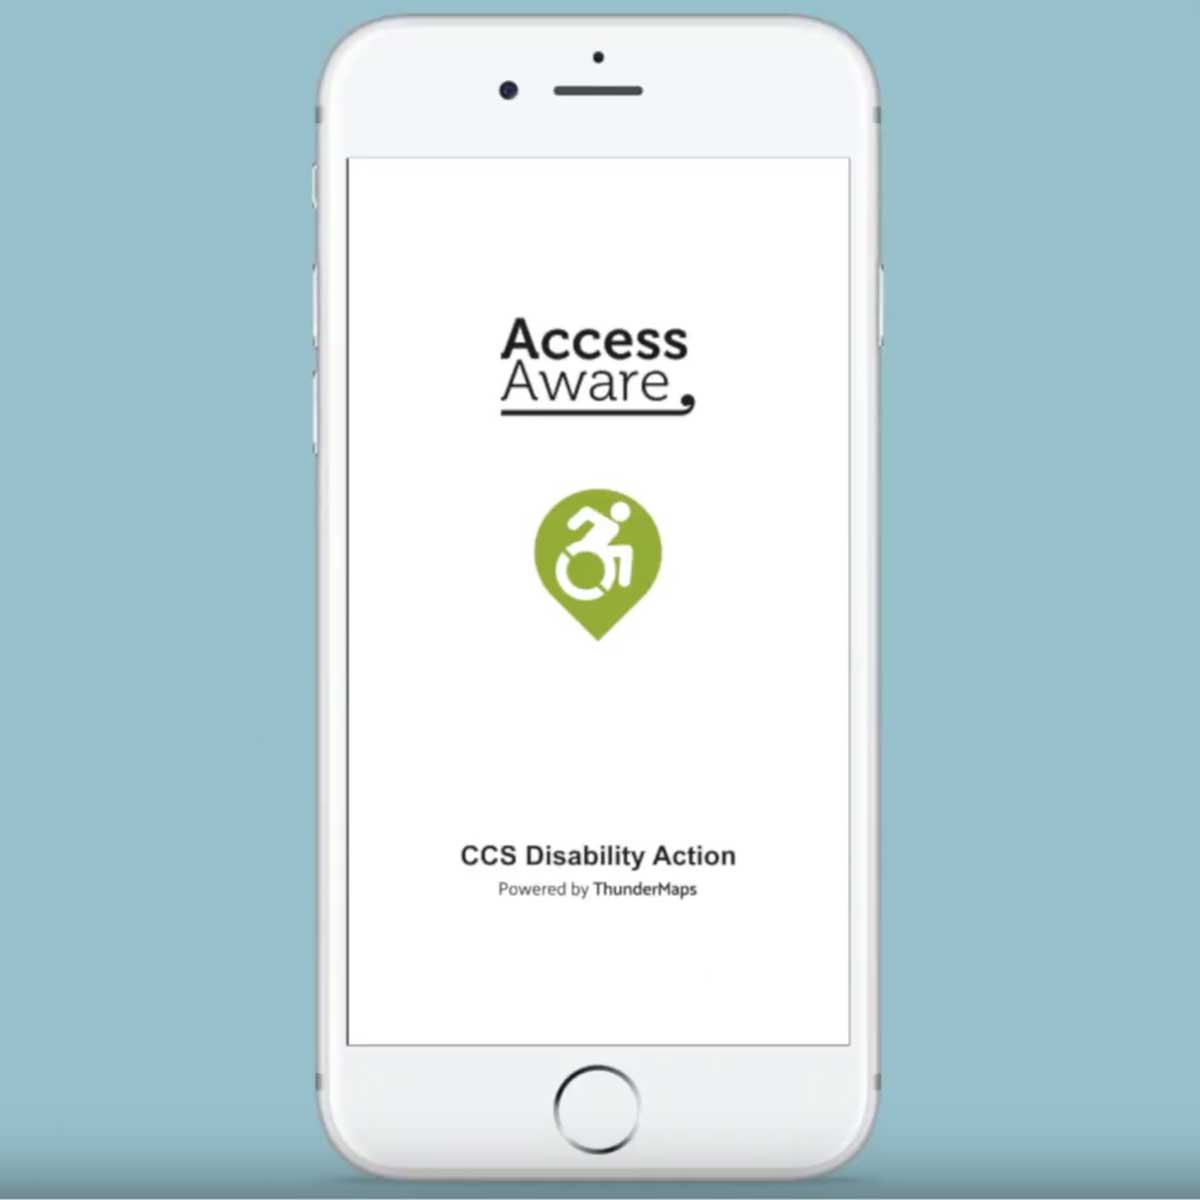 CCSDA Access Aware's Cover